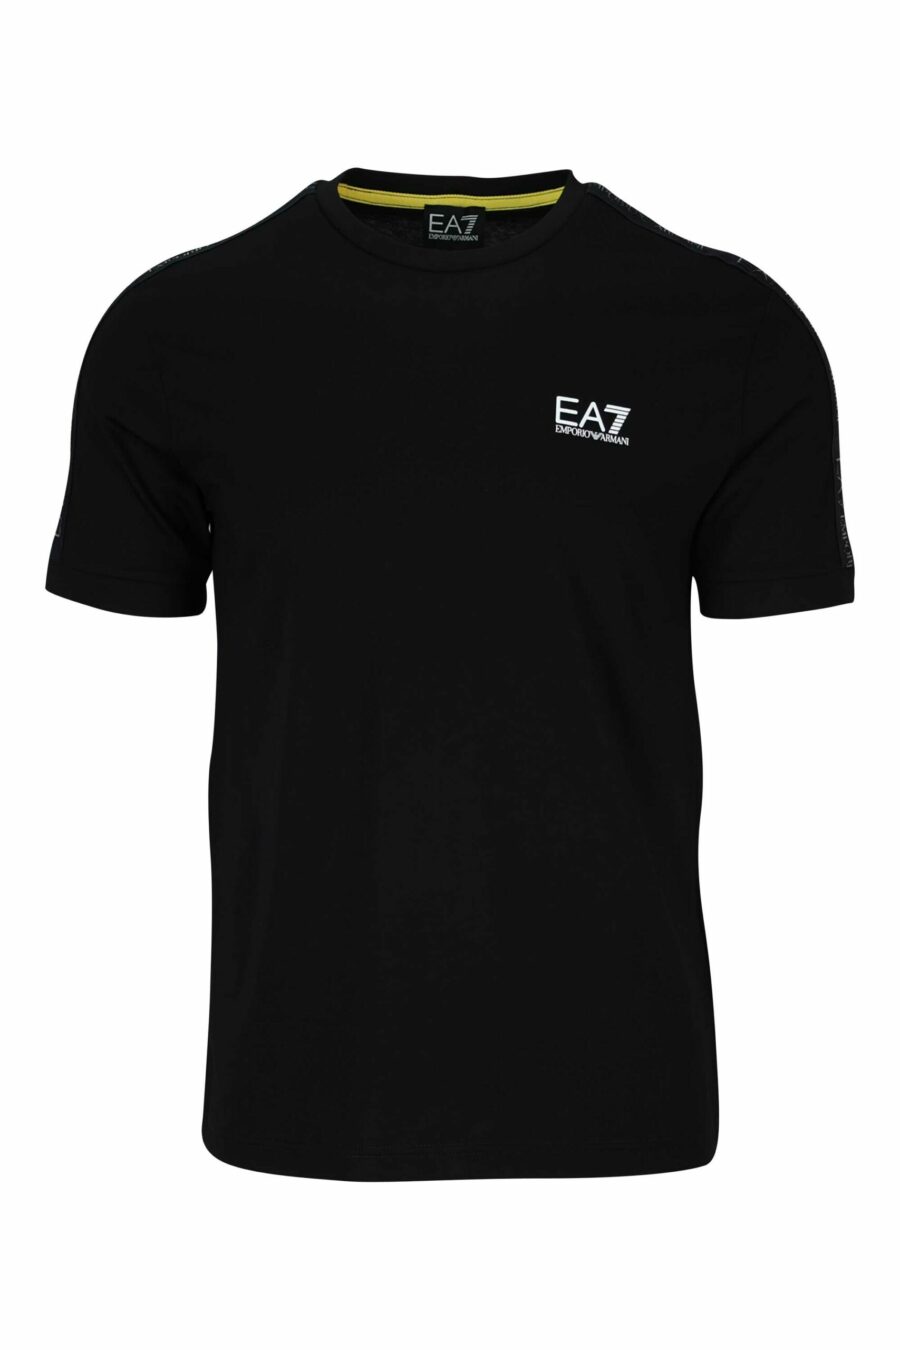 T-shirt noir avec mini-logo noir "lux identity" - 8058947490189 scaled